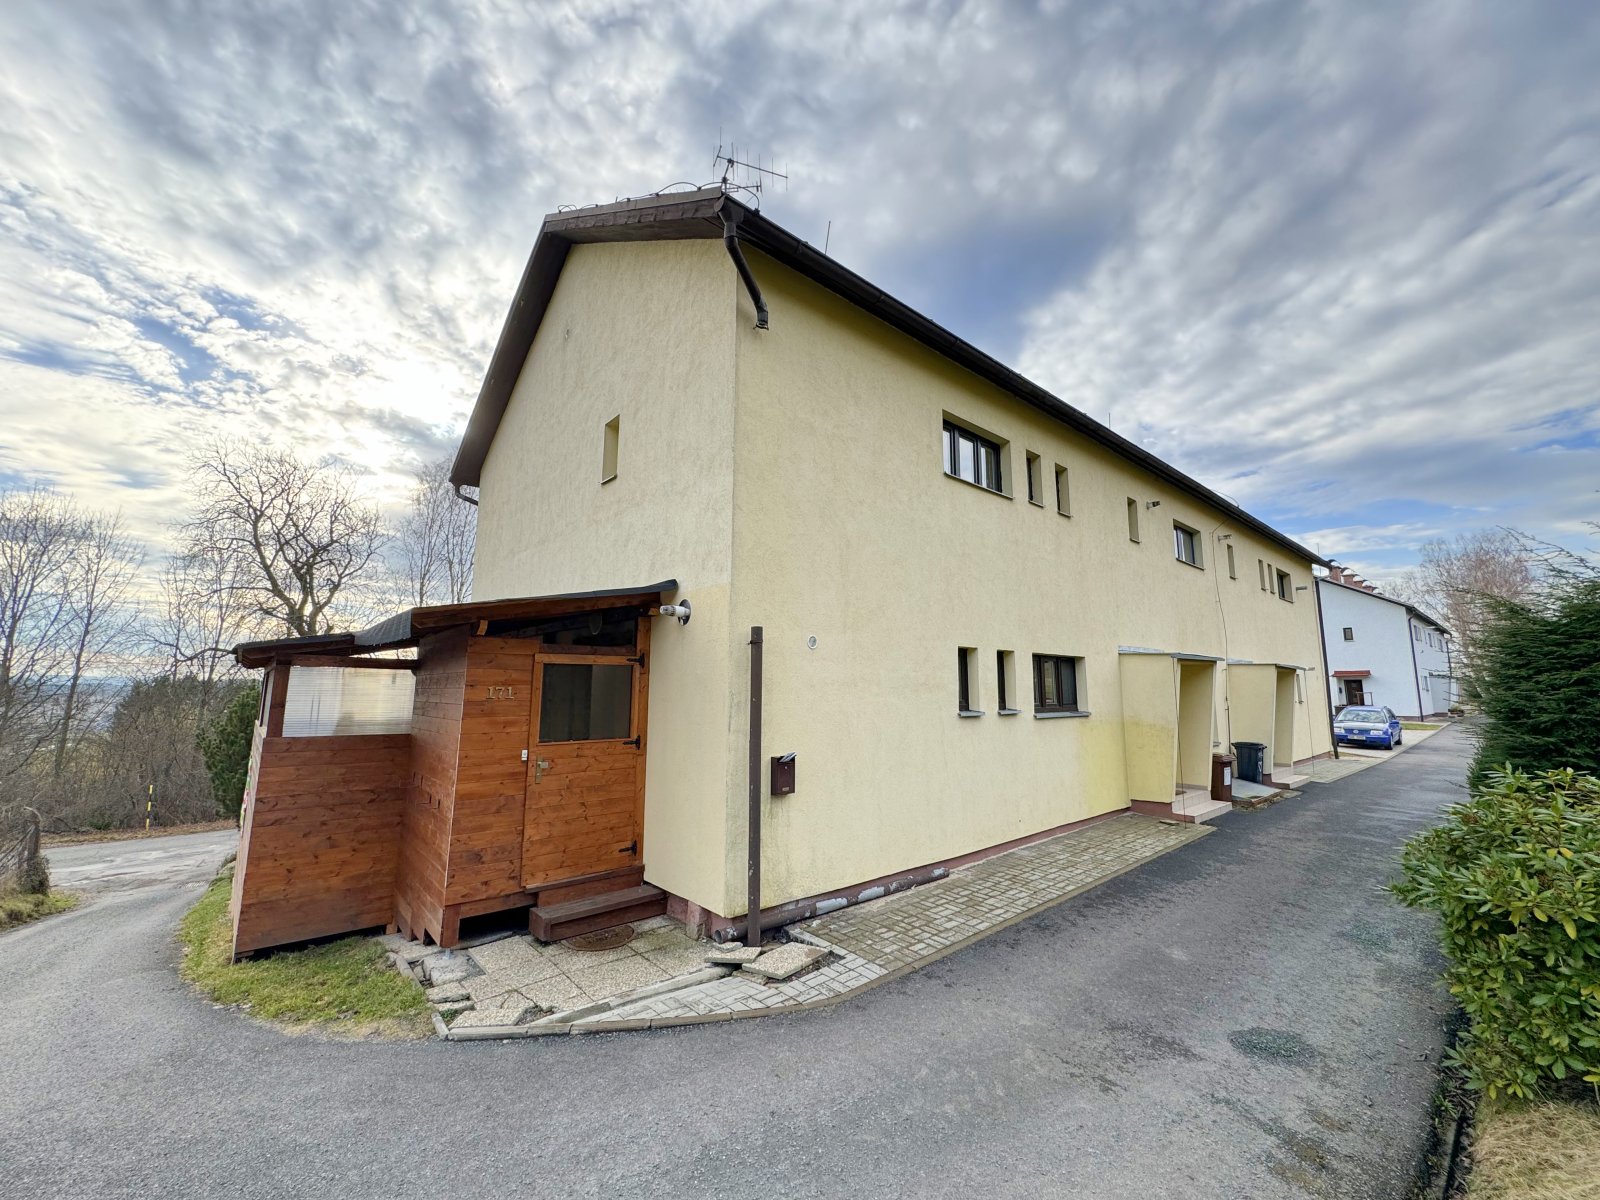 Rezervace: Zděný byt 3+1, OV, zahrada a zastřešená terasa, Malé Svatoňovice, okres Trutnov